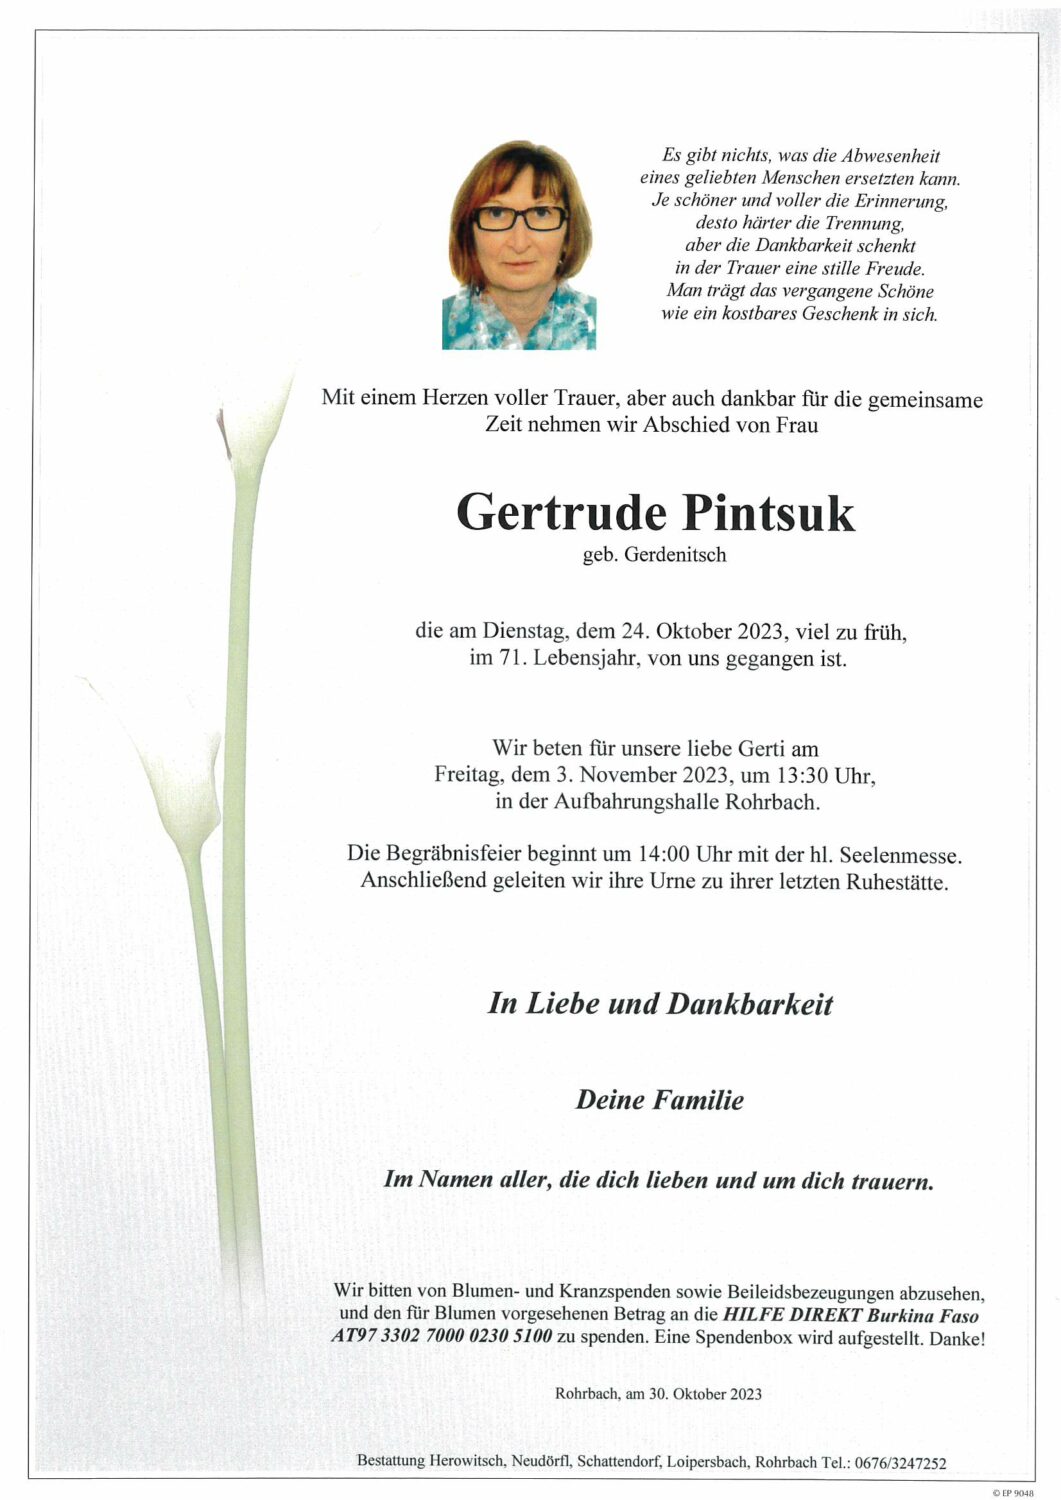 Gertrude Pintsuk